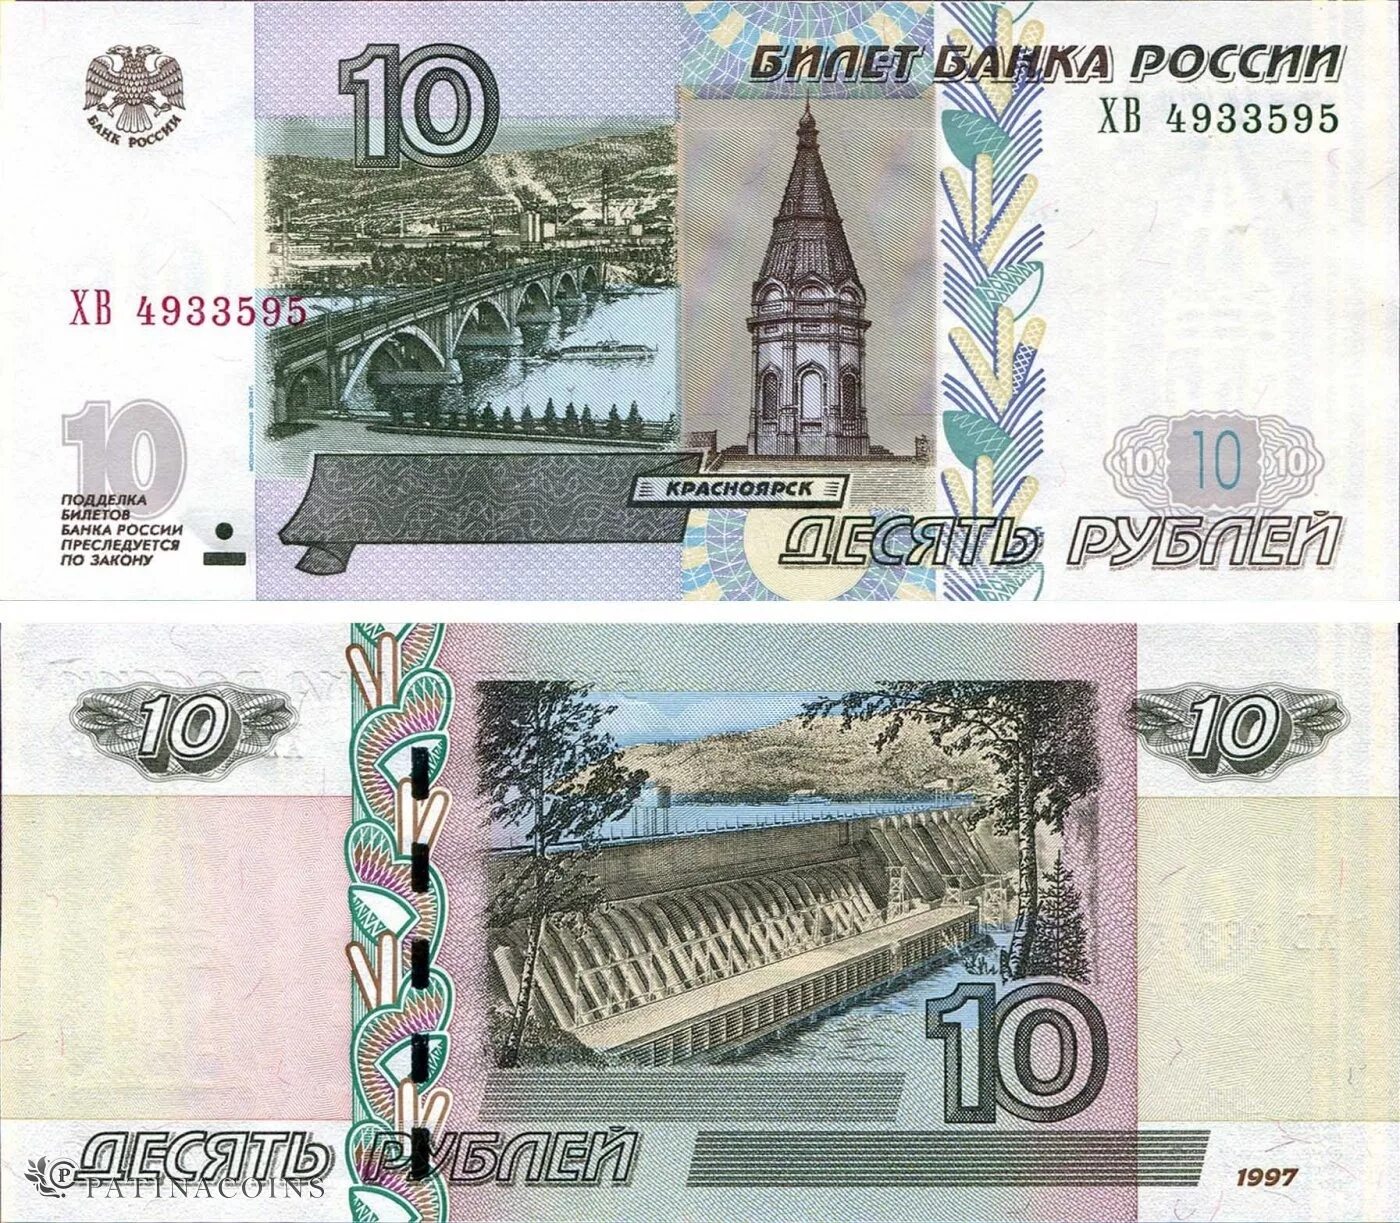 10 Рублей купюра. 10 Рублей банкнота. Российские купюры 10 рублей. 10 Рублей бумажные.